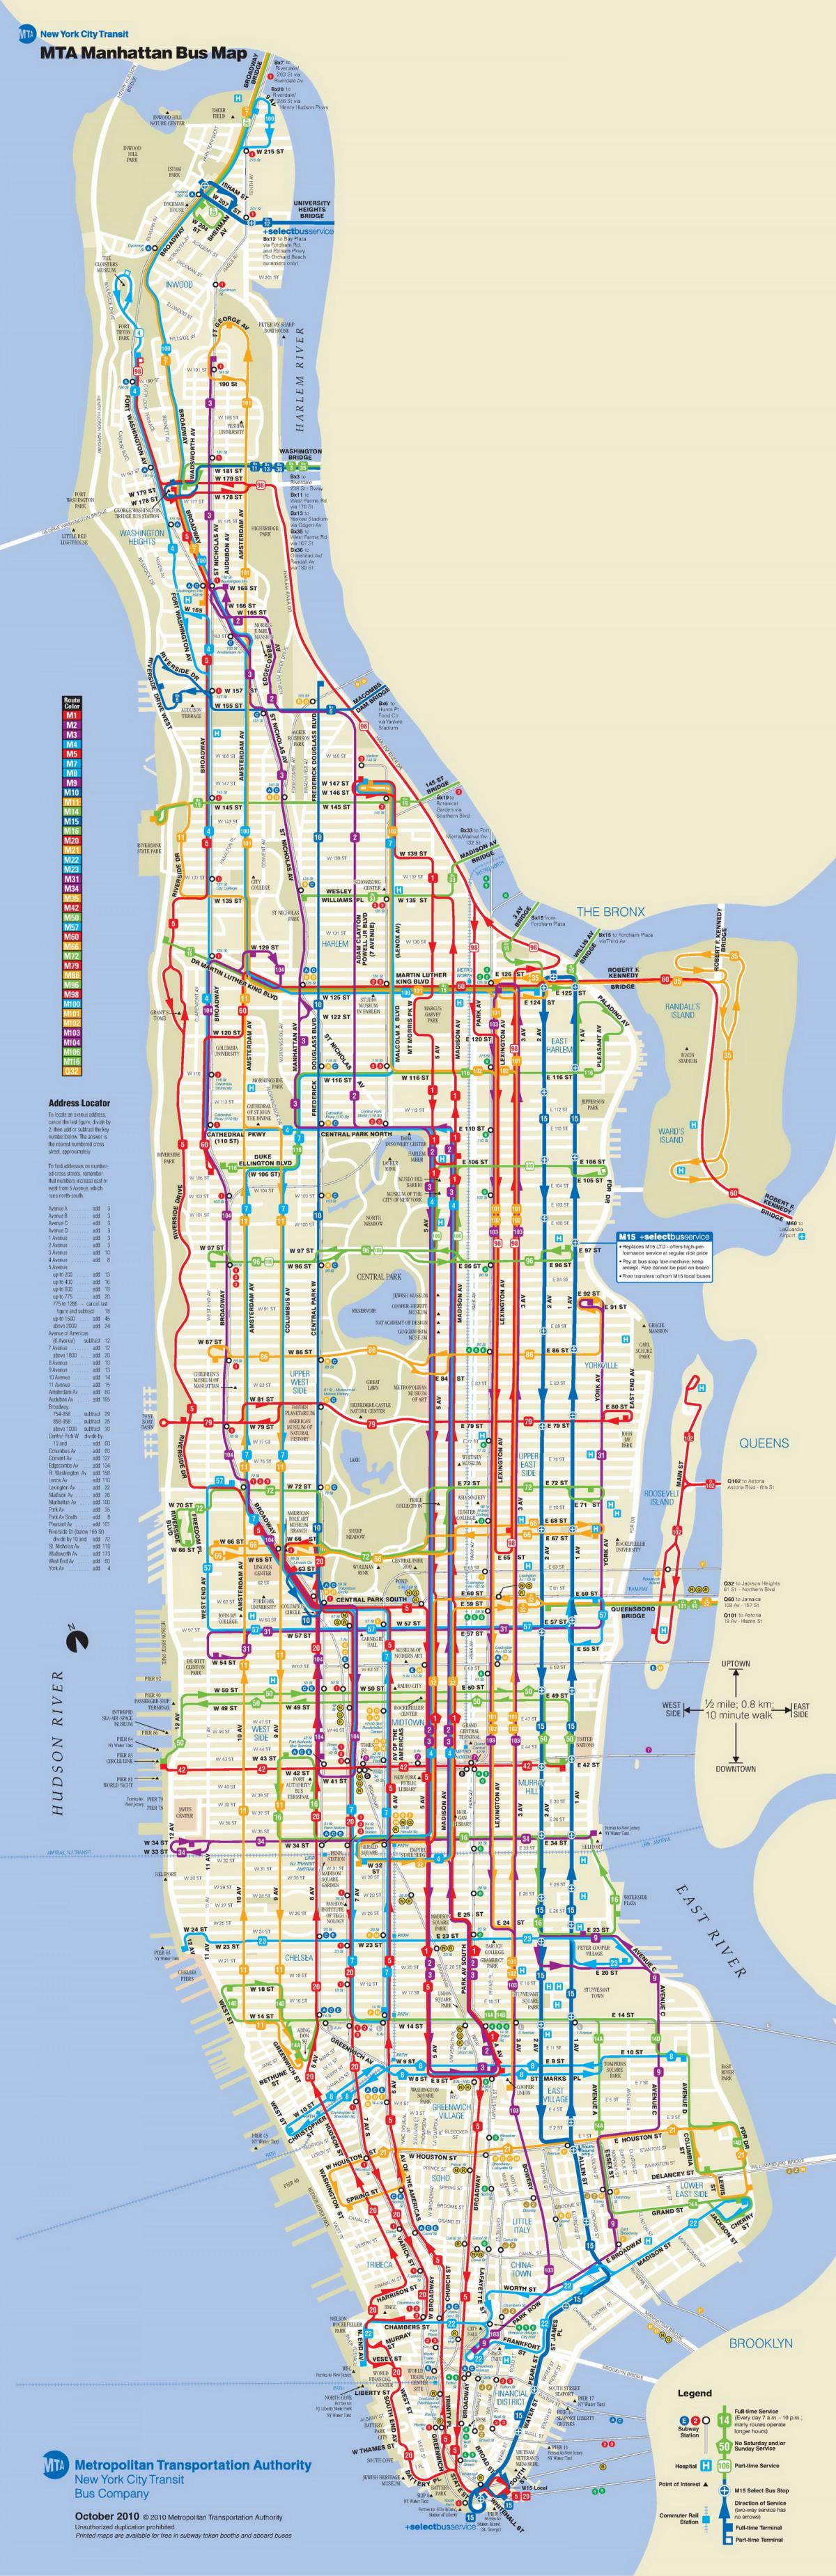 AIT автобус на картата Манхатън